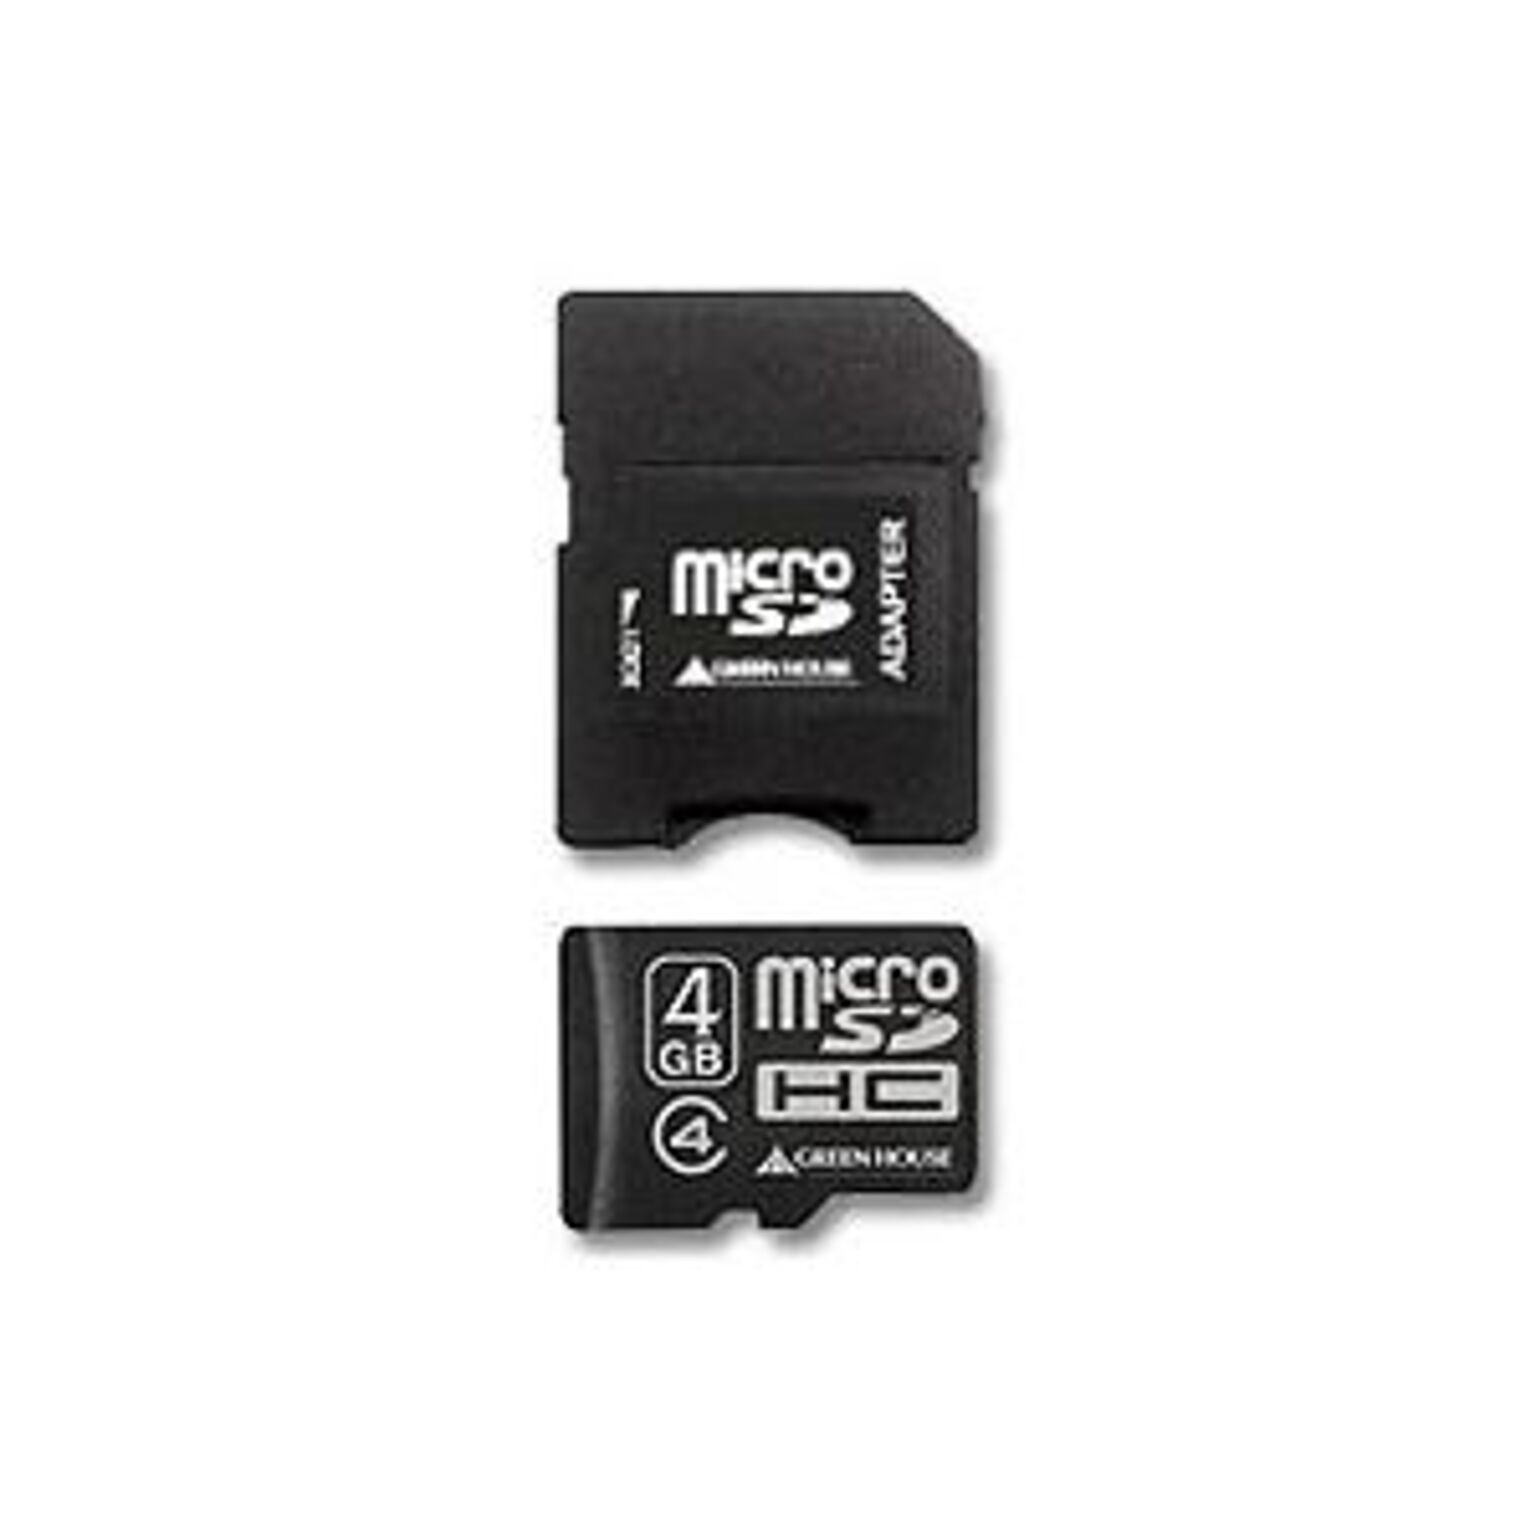 (まとめ) グリーンハウス microSDHCカード4GB Class4 防水仕様 SDHC変換アダプタ付 GH-SDMRHC4G4 1枚 【×10セット】